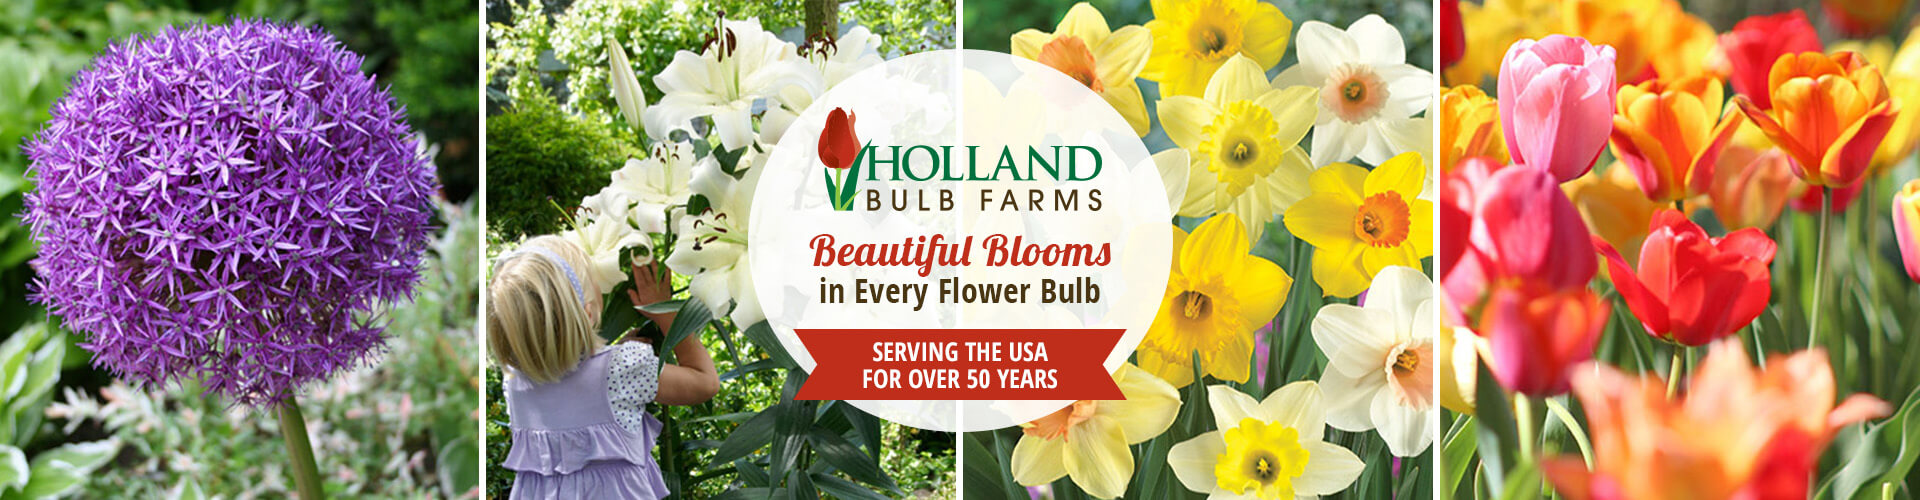 Holland Bulb Farms banner